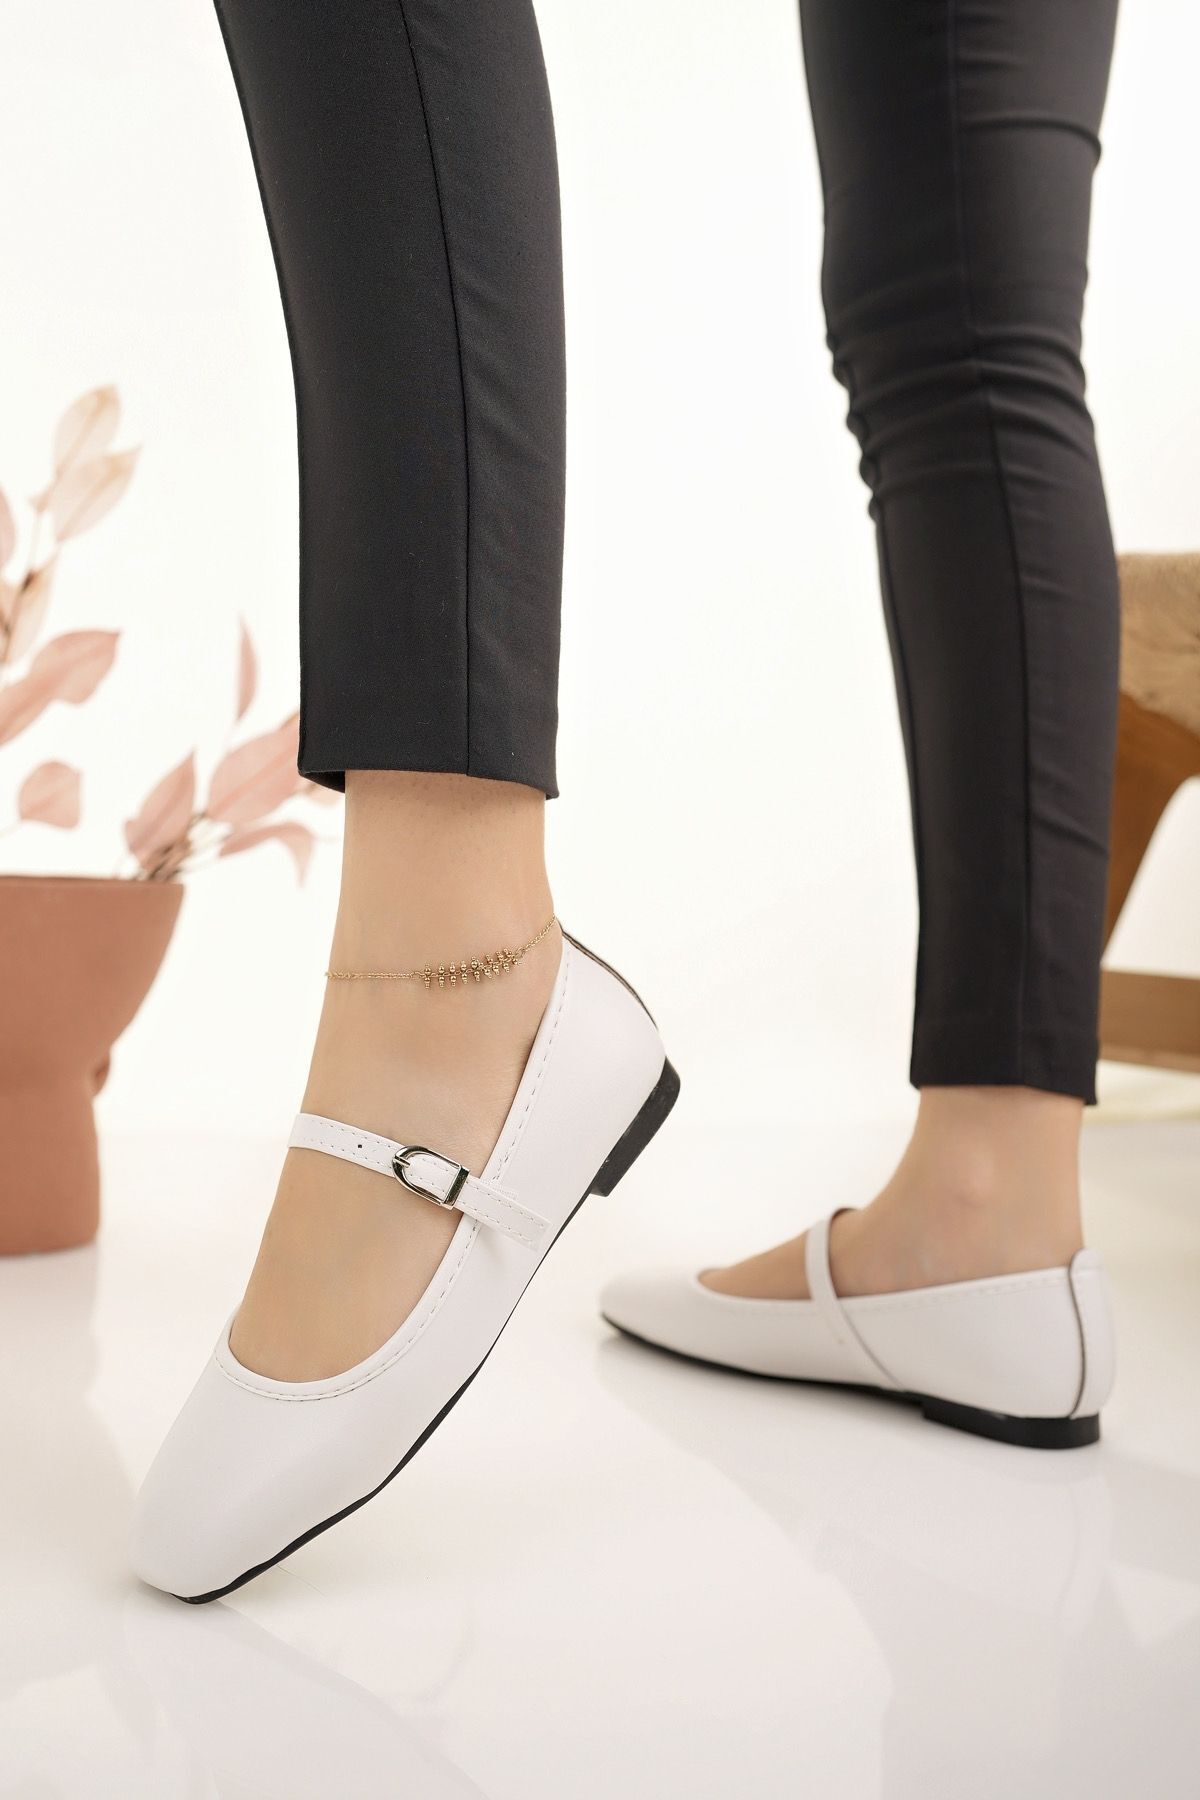 Modafırsat Kadın Babet Beyaz Bantlı Kemerli Hafif Rahat Şık İş Ofis Günlük Ayakkabı